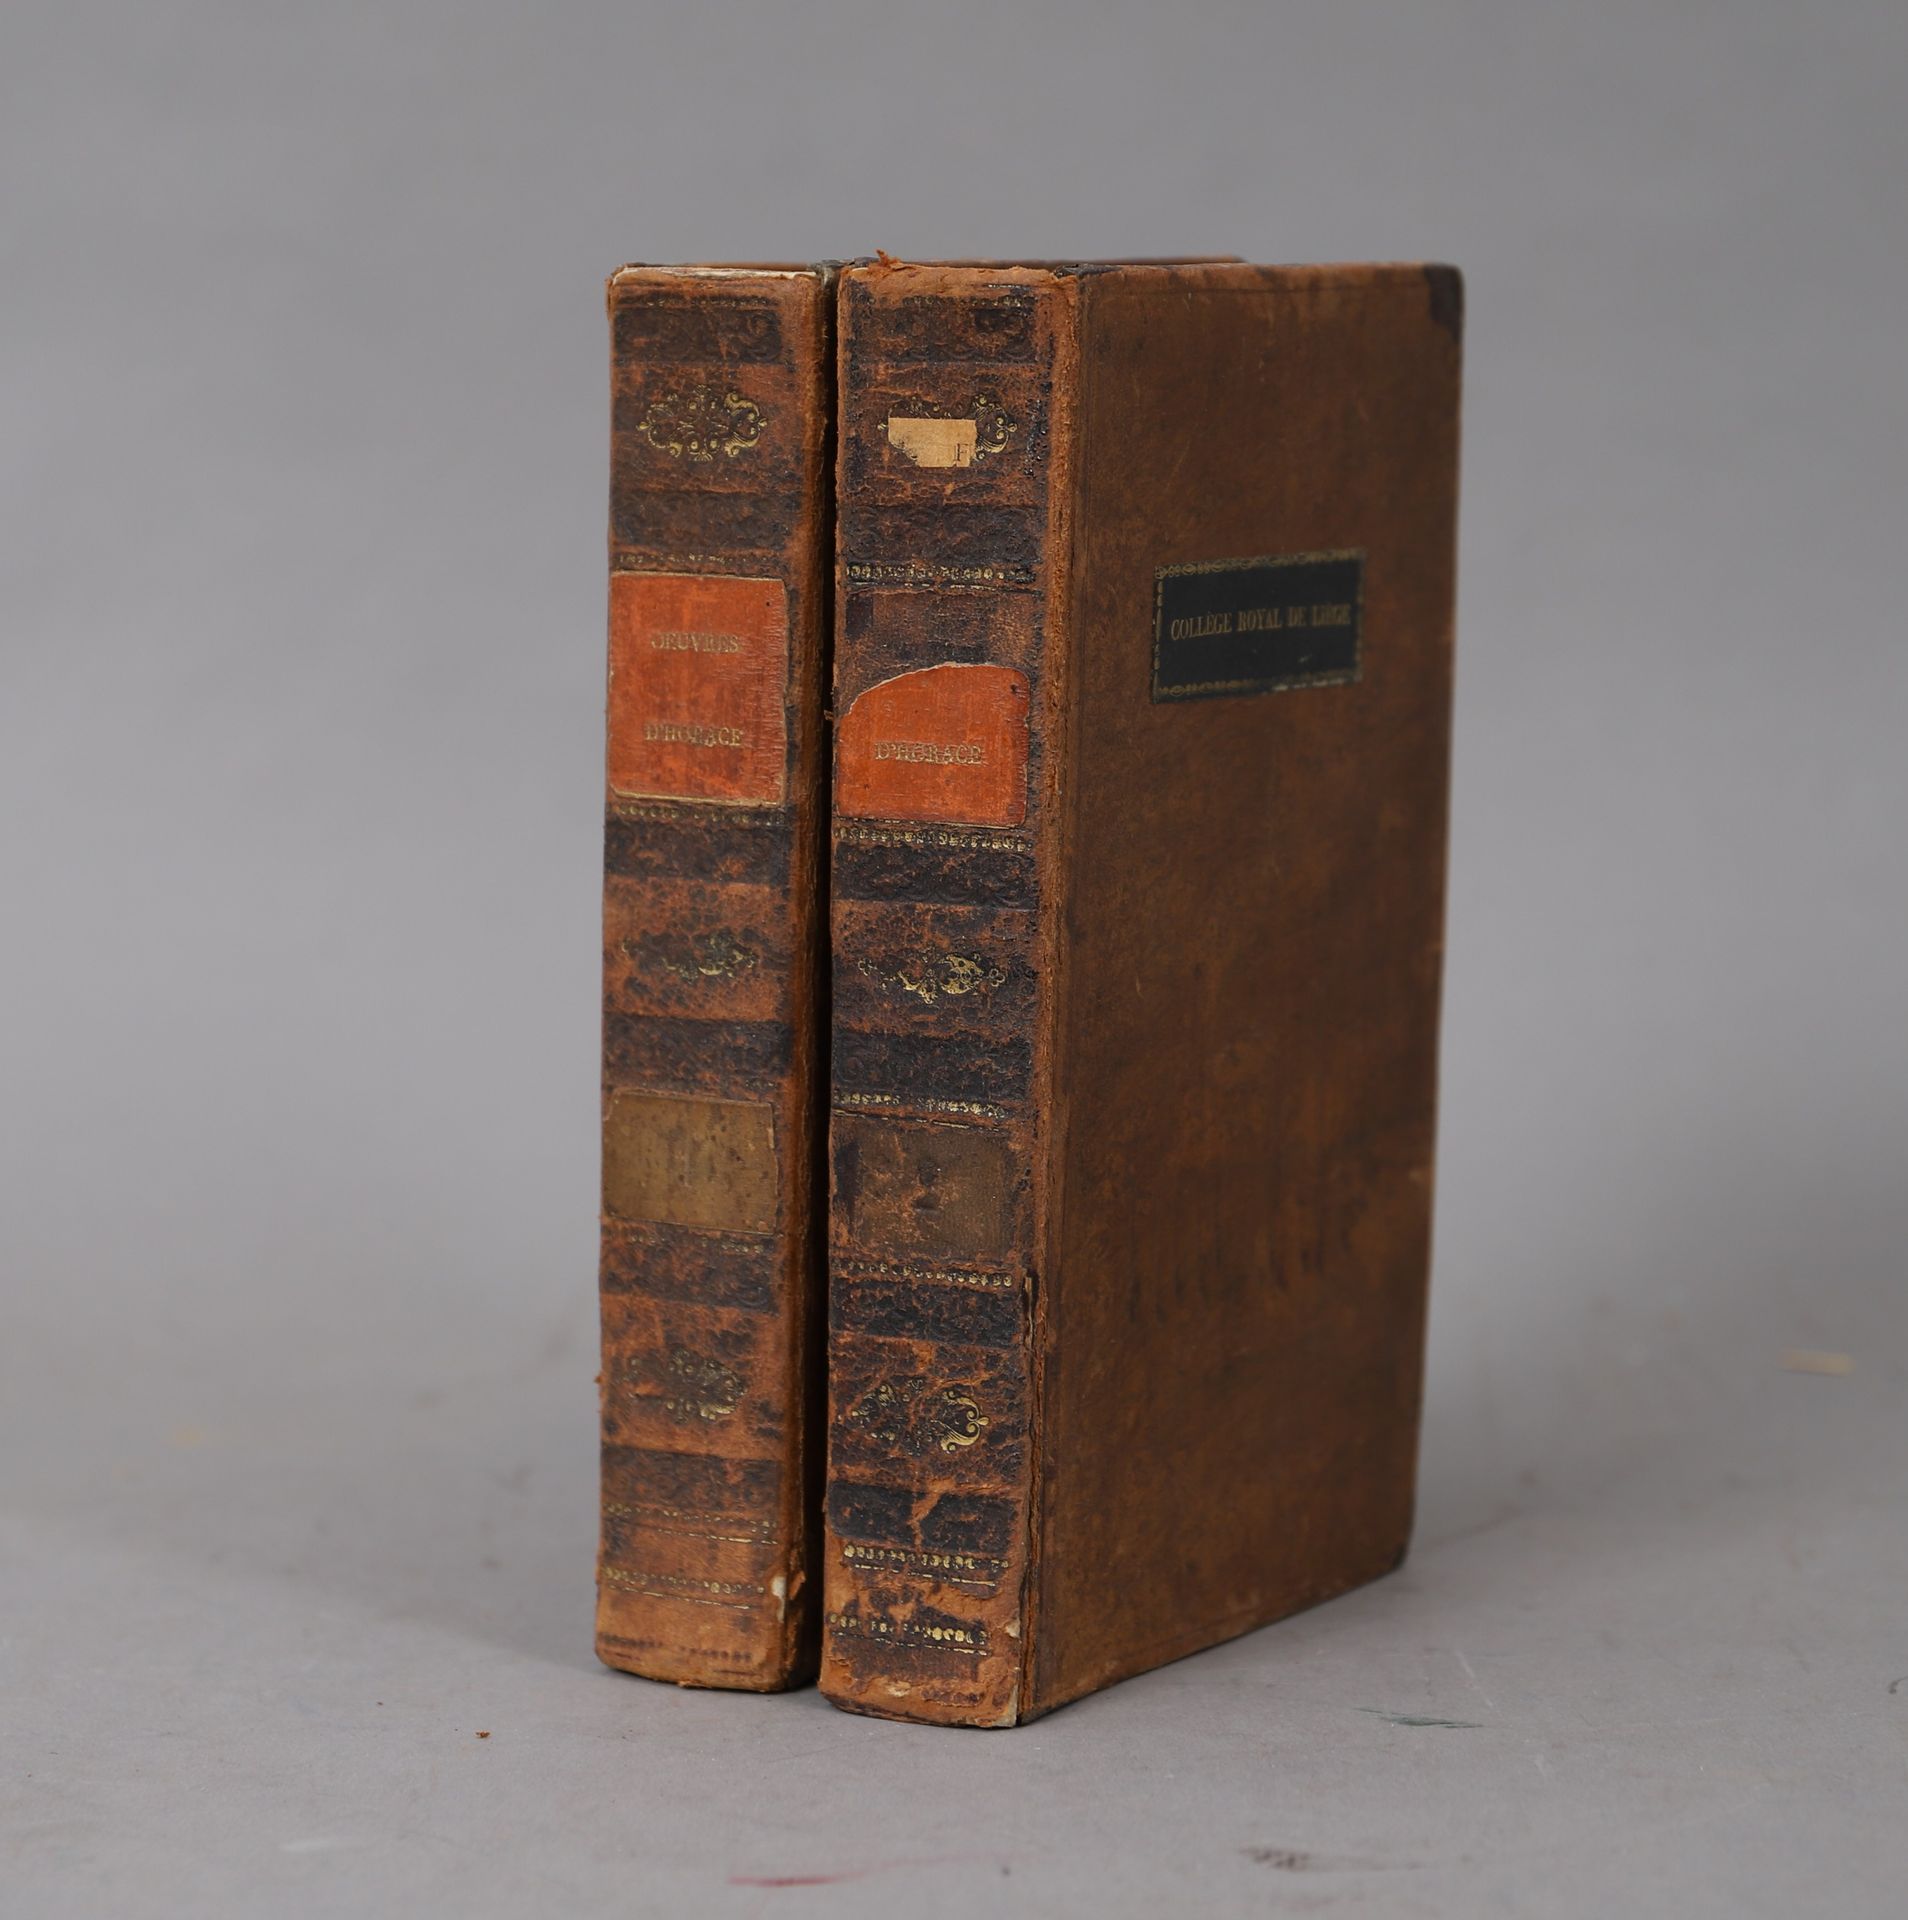 Null 贺拉斯的作品

1823

2册合订本。